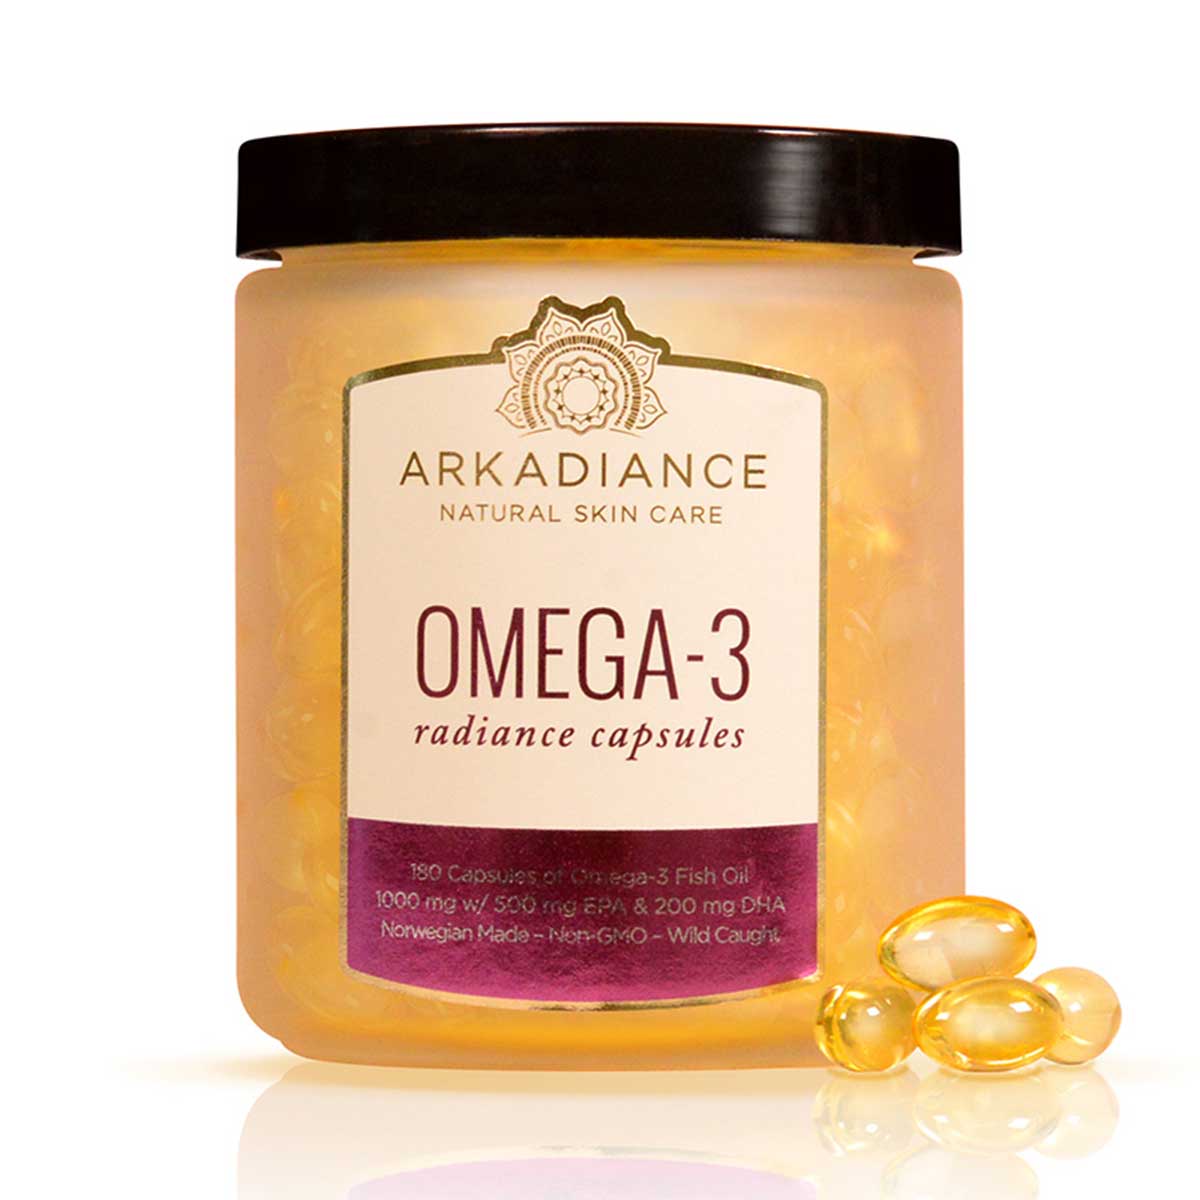 Omega-3 Radiance Capsules